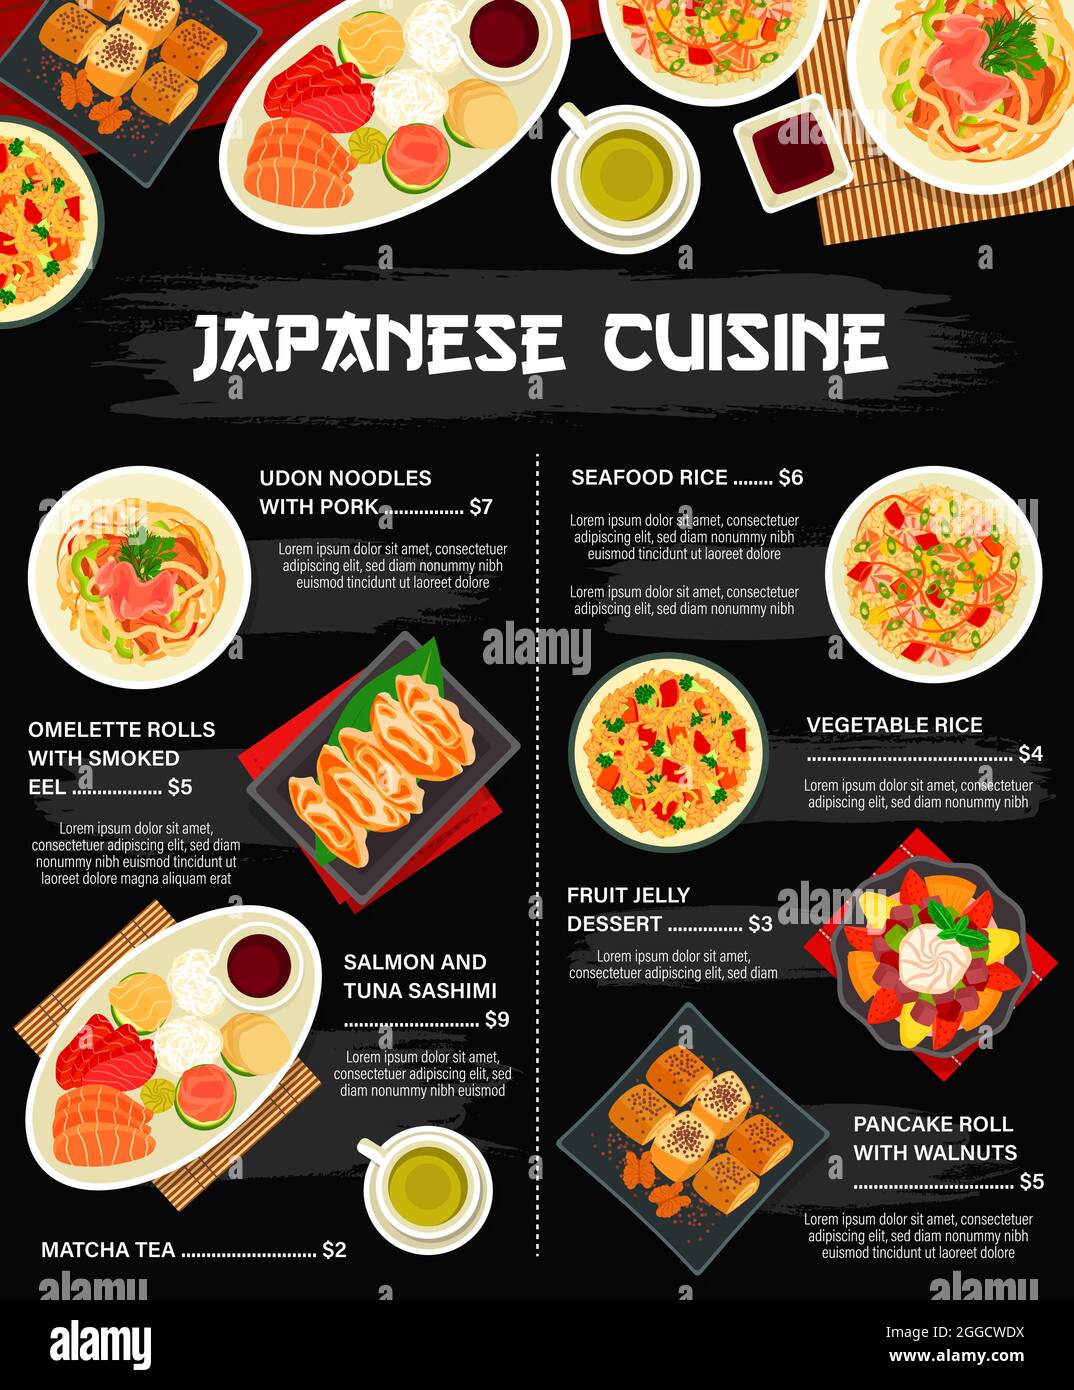 Thực đơn nhà hàng Nhật và món ăn Châu Á là sự kết hợp hoàn hảo của hai nền văn hóa ẩm thực độc đáo. Dấu ấn đặc trưng của ẩm thực Nhật Bản và Châu Á sẽ tạo nên một trải nghiệm ẩm thực hoàn toàn mới lạ cho khách hàng. Hãy xem ngay thực đơn nhà hàng Nhật và Châu Á để cùng trải nghiệm ẩm thực độc đáo nhất. 